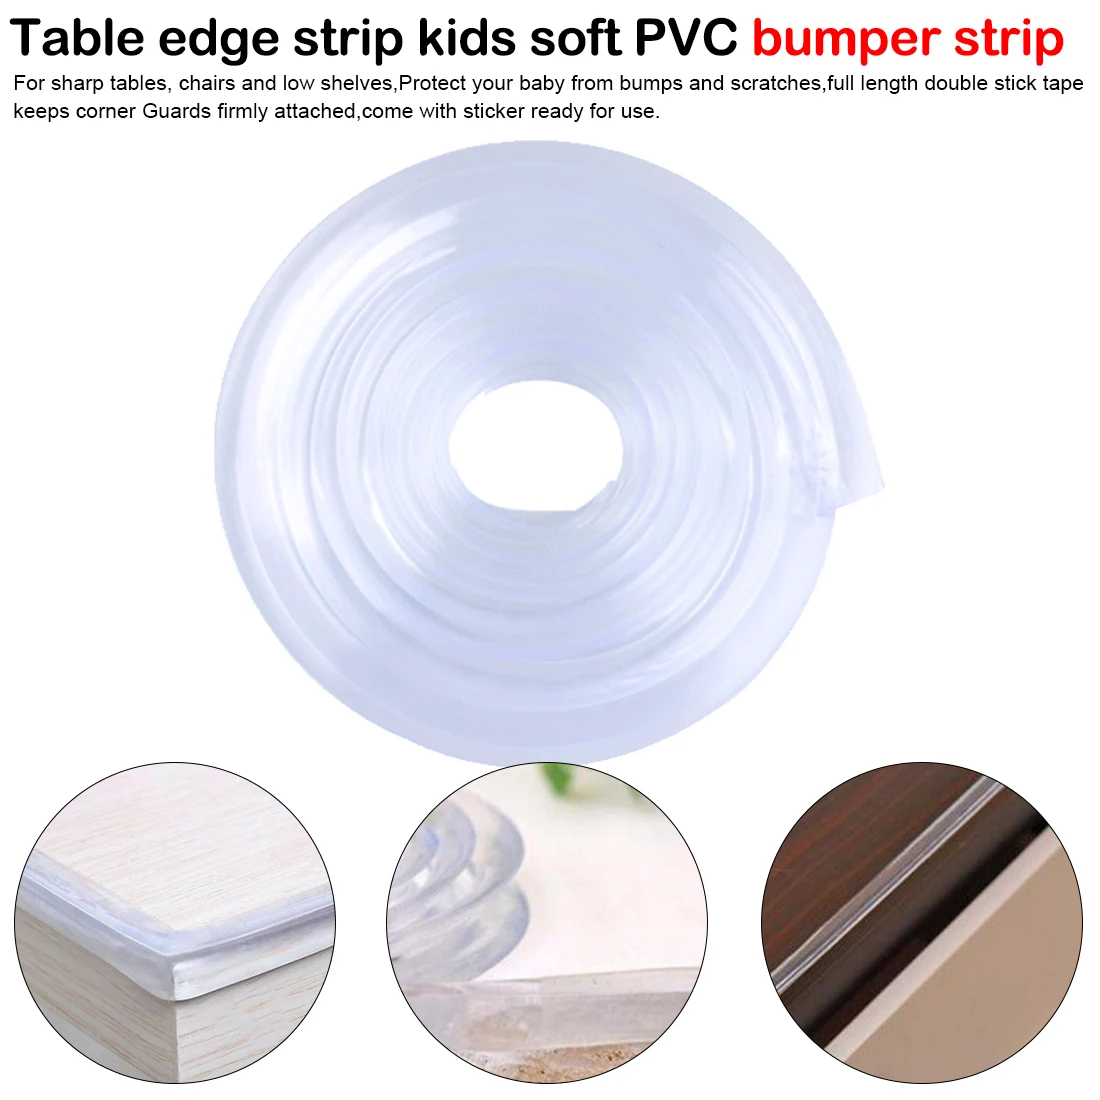 Прозрачная угловая защитная полоса для стола, защита от детей, мягкая силиконовая накладка для мебели, детские товары 1 м